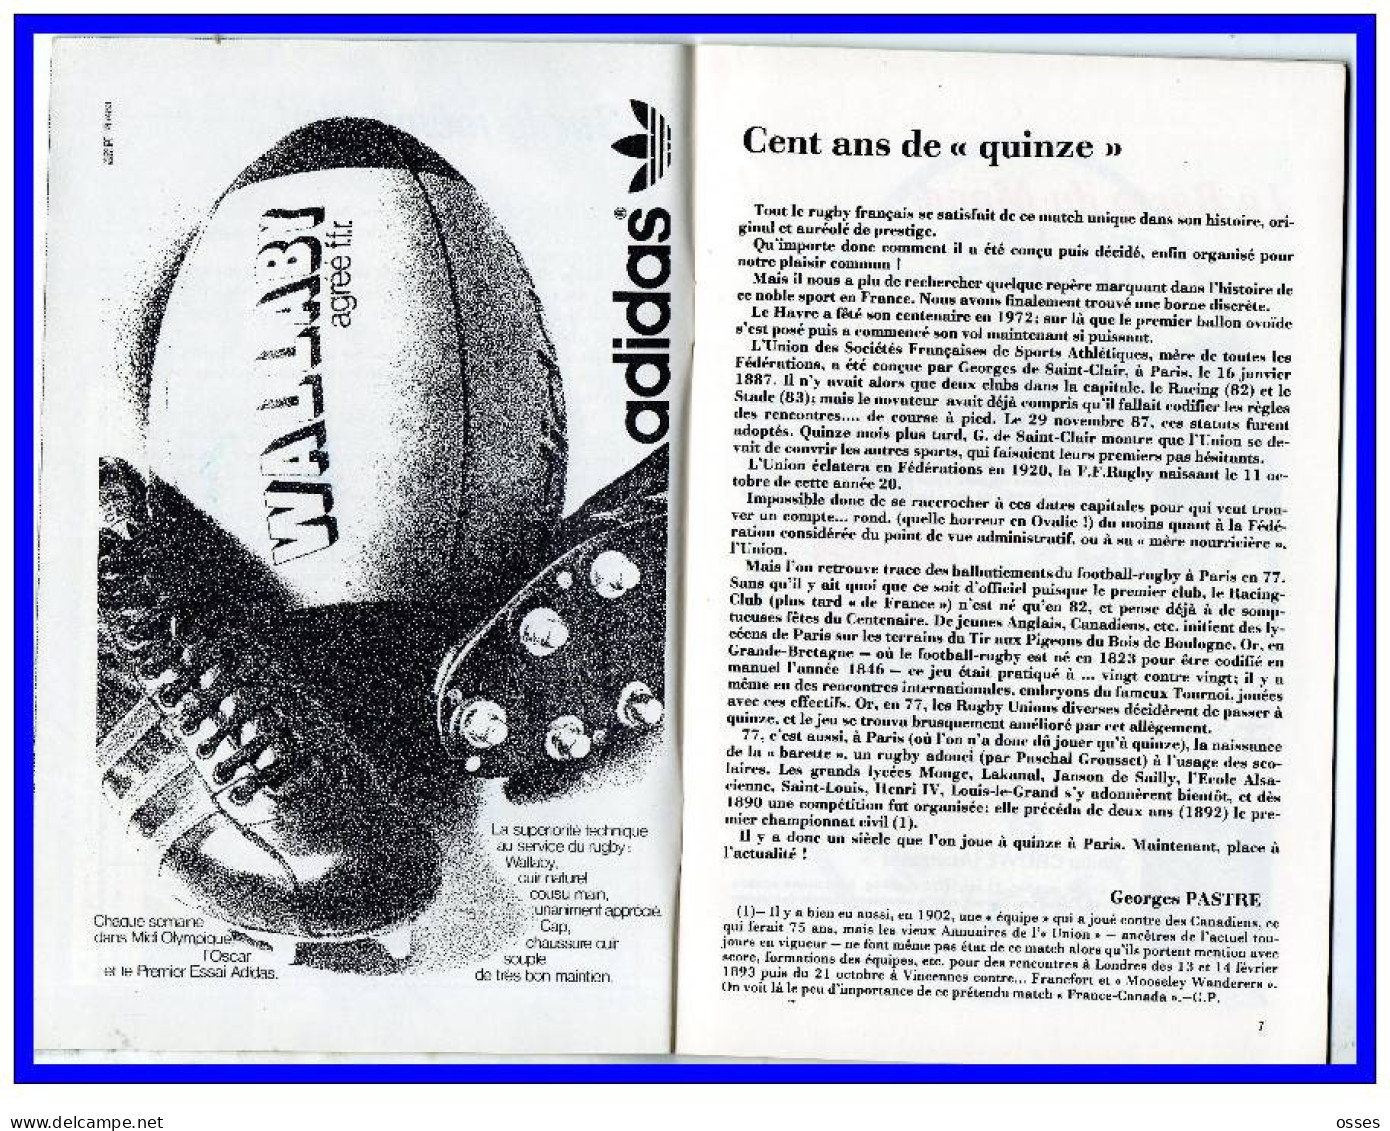 FFR.FRANCE Contre XV Du PRESIDENT Parc Des Princes Programme Officiel Oct.1977.(rectos Verso) - Rugby